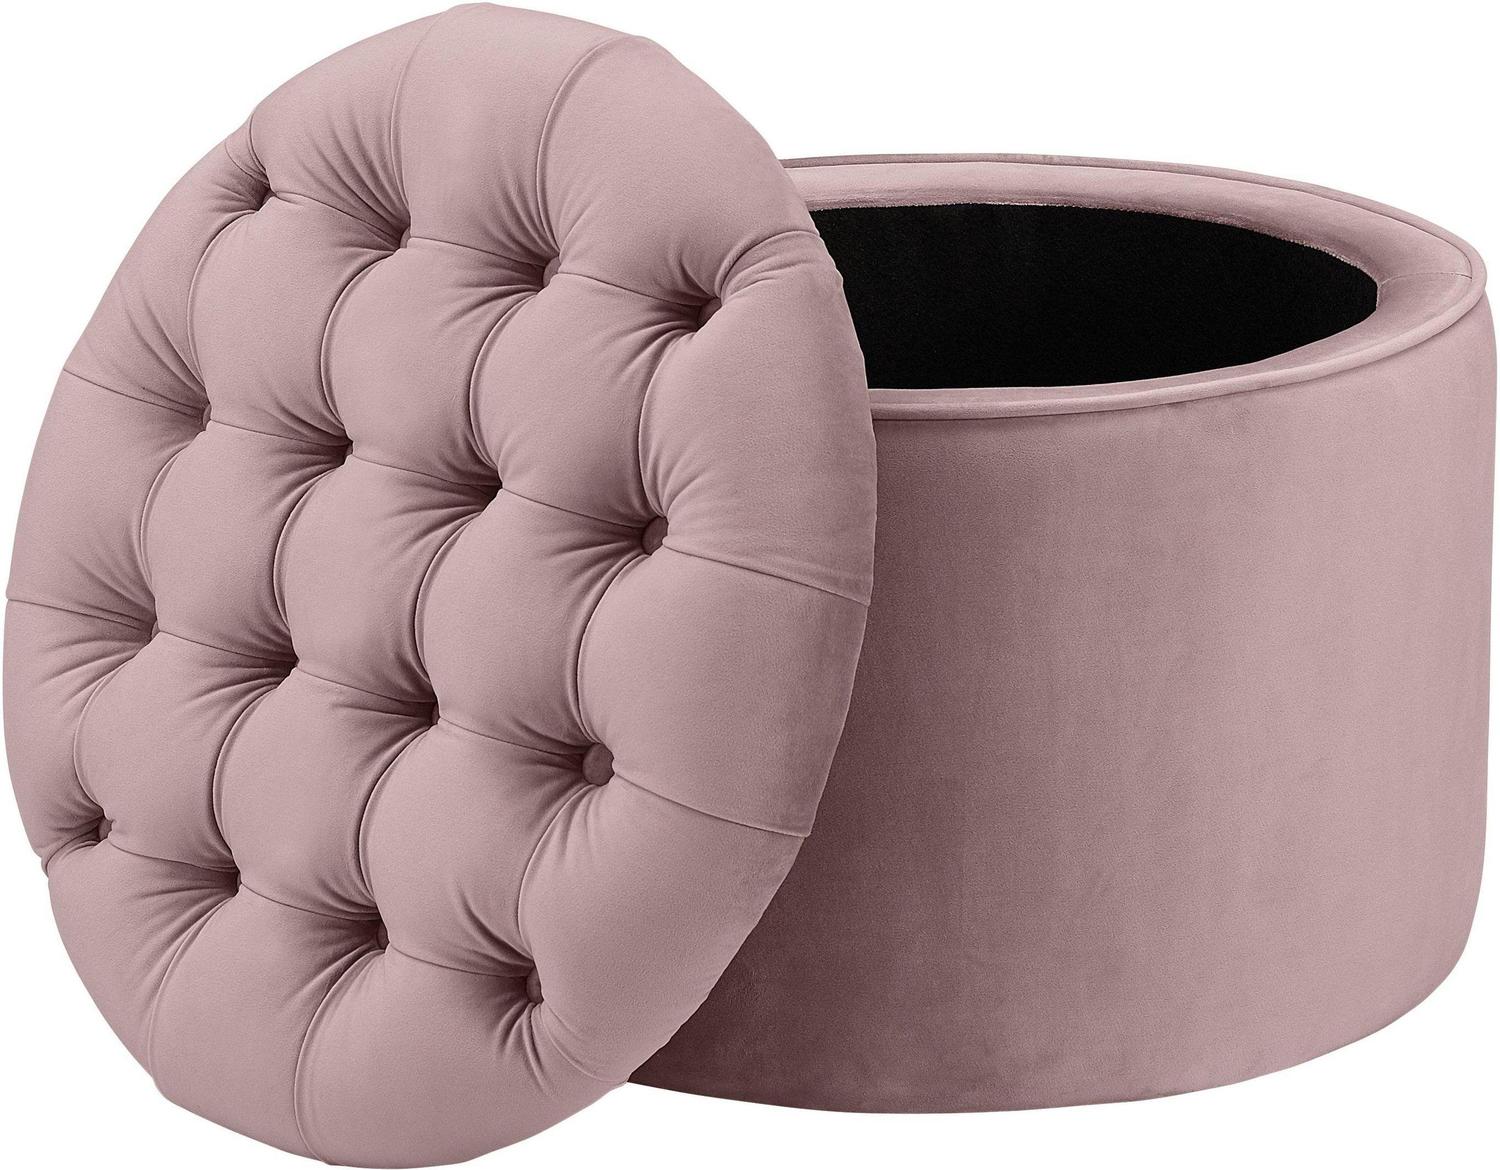 square storage bench Contemporary Design Furniture Ottomans Blush